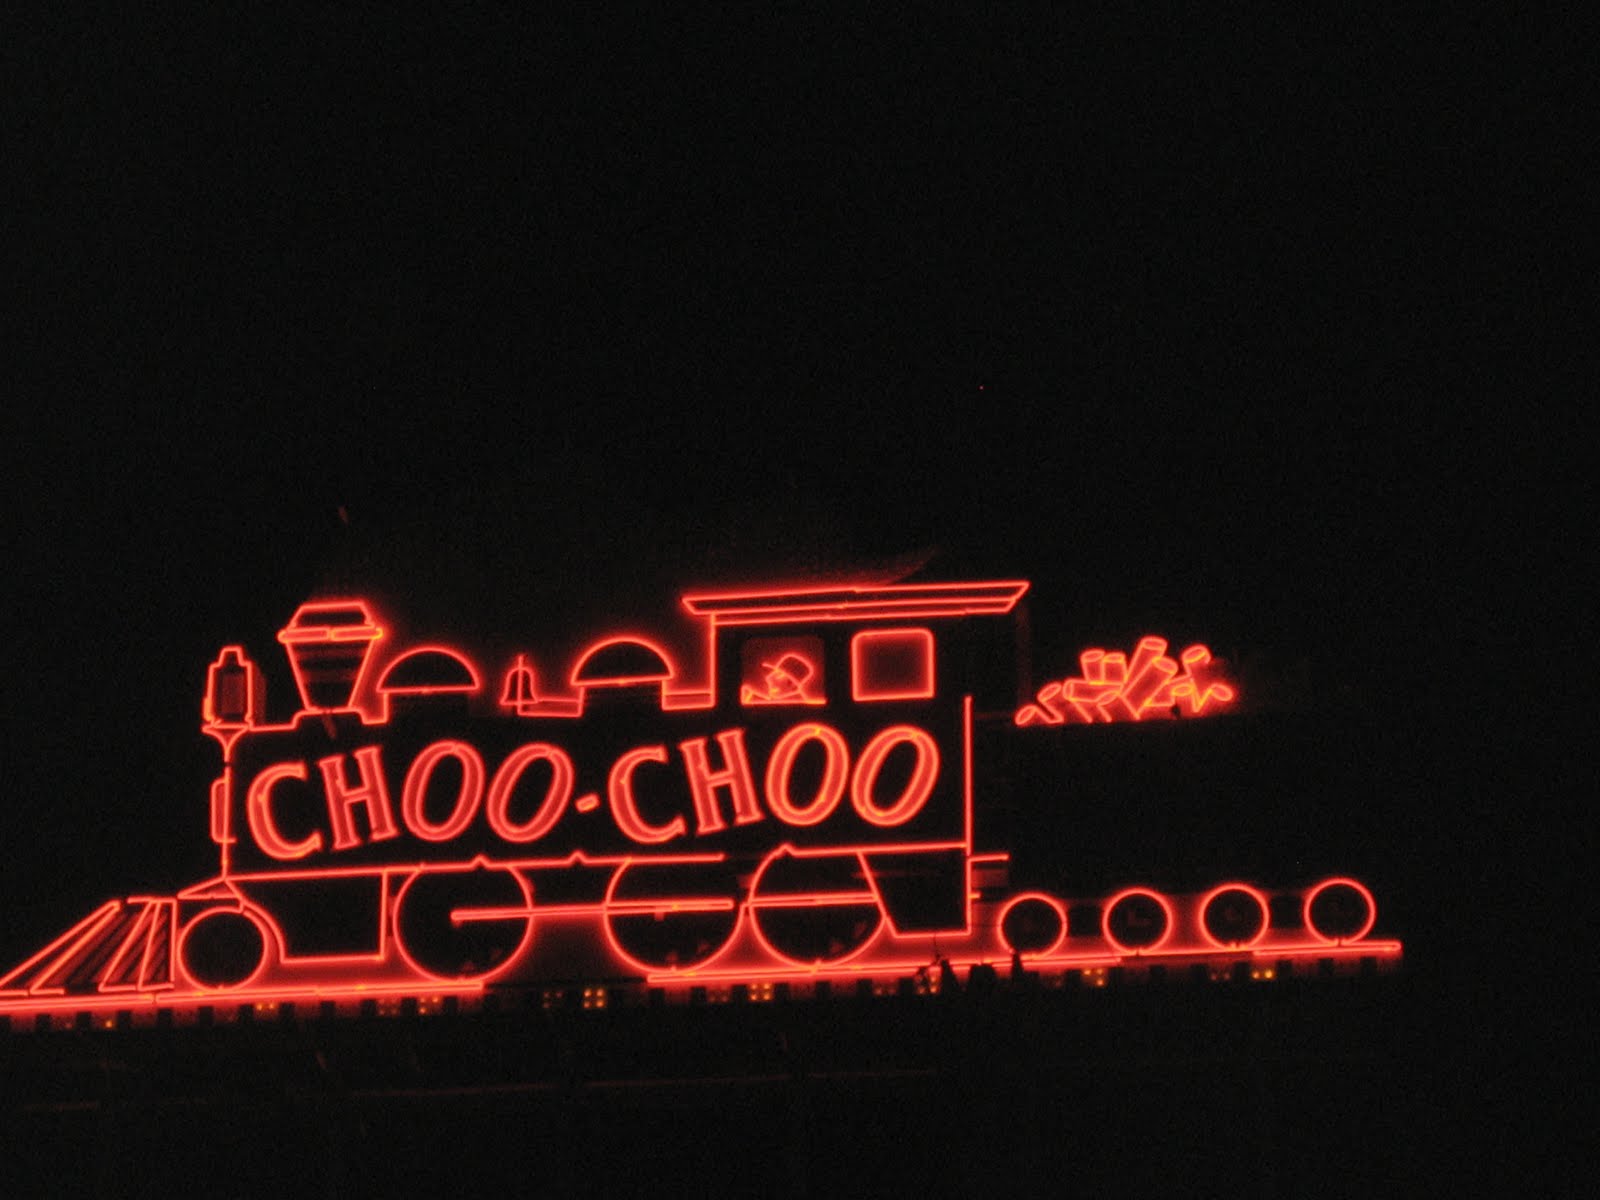 Chattanooga Choo Choo.